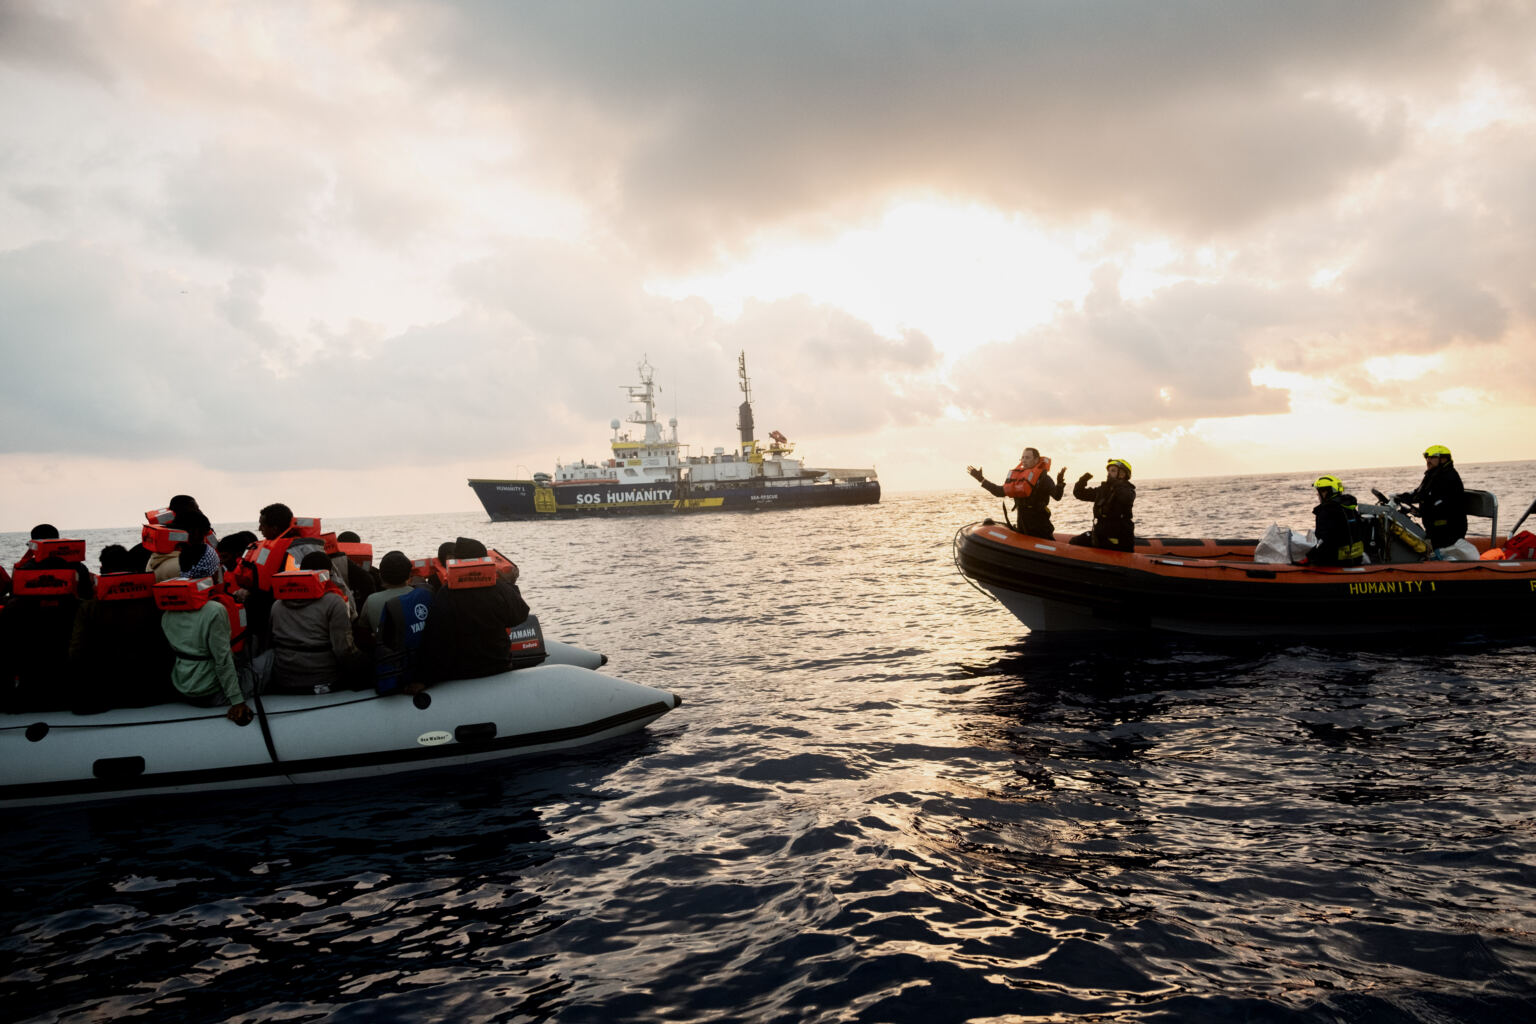 Europa: Detener el bloqueo ilegítimo de los buques de rescate en el Mediterráneo